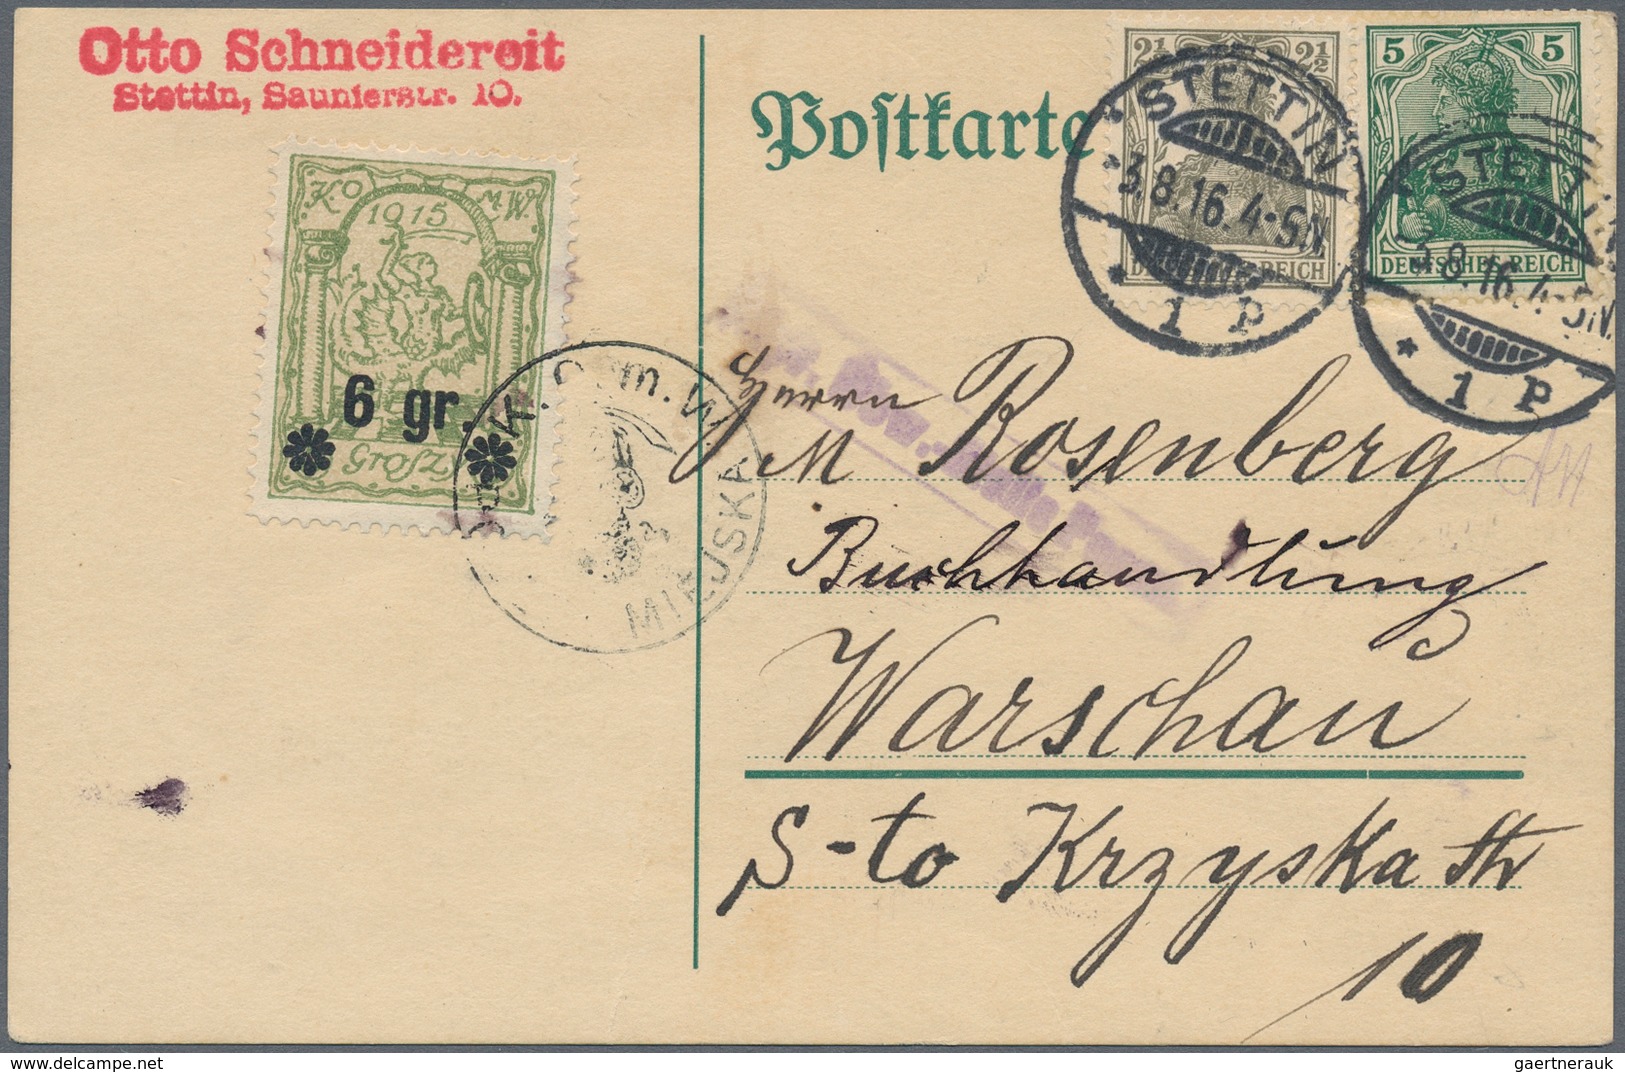 Deutsches Reich - Nebengebiete: 1902/1920, vielseitige Partie von ca. 170 Bedarfs-Briefen/Karten, da